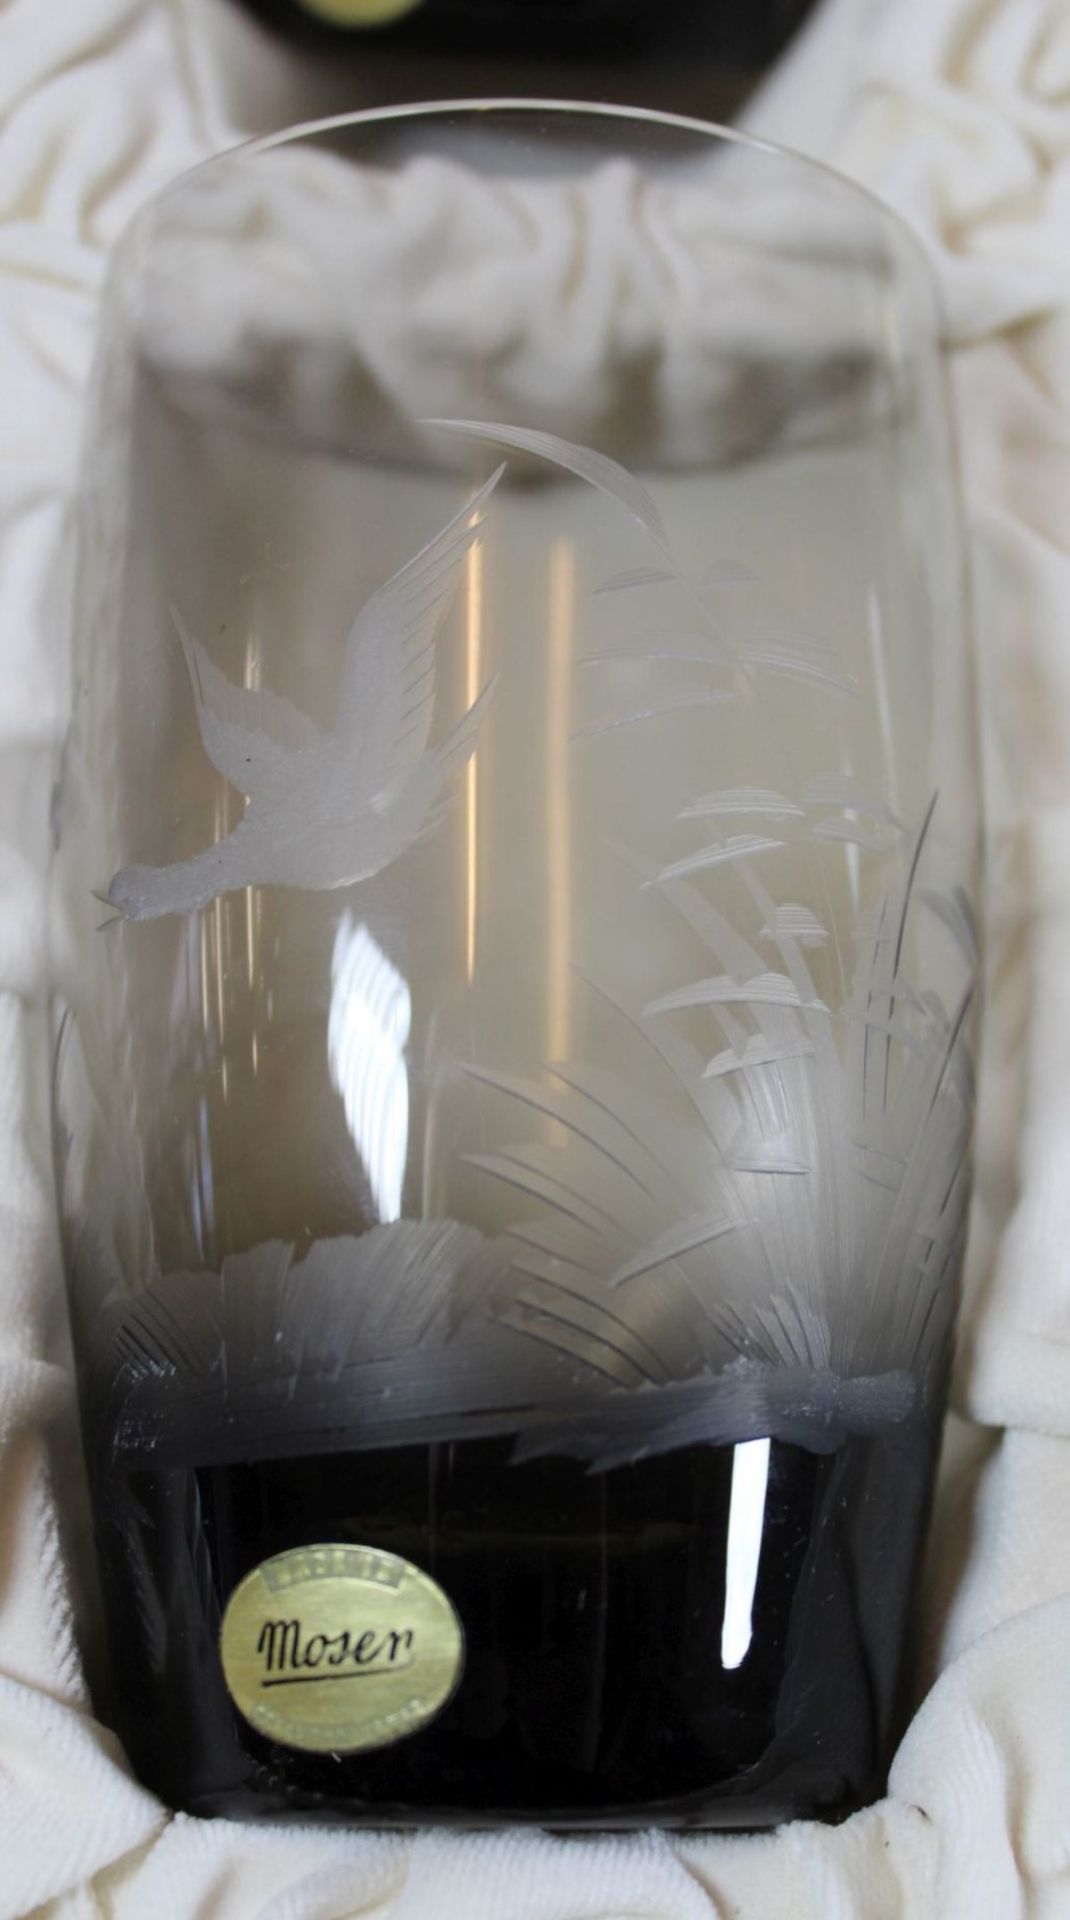 6 Rauchglas-Becher "Moser" Czechoslowakei, beschliffen mit verschiedenen Wildvögeln in orig. Kasten, - Bild 2 aus 7